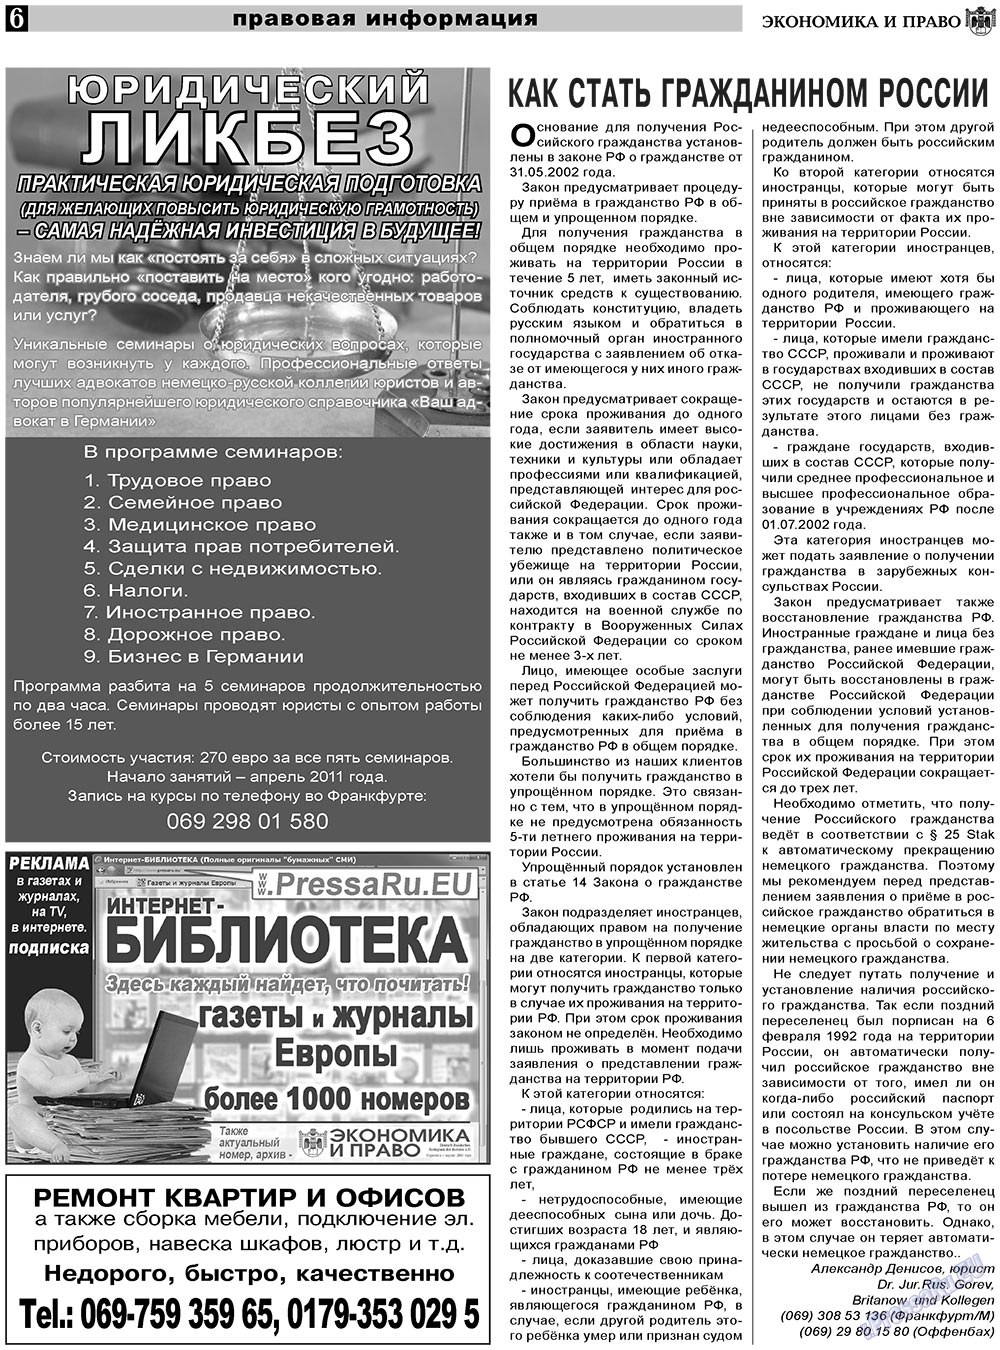 Экономика и право, газета. 2011 №3 стр.6